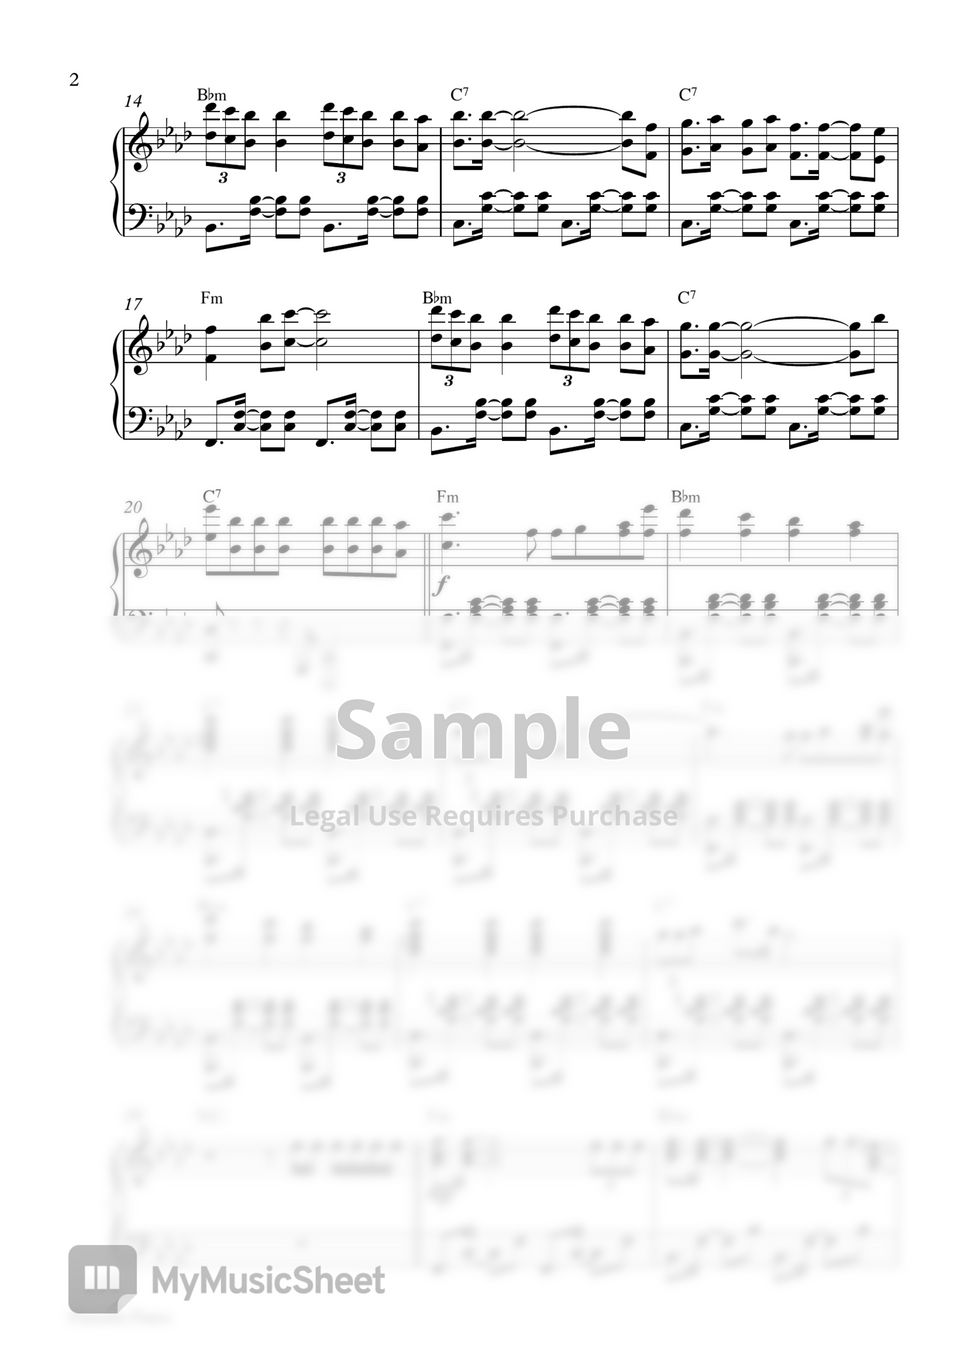 BTS Jimin - Filter (Piano Sheet) by Pianella Piano